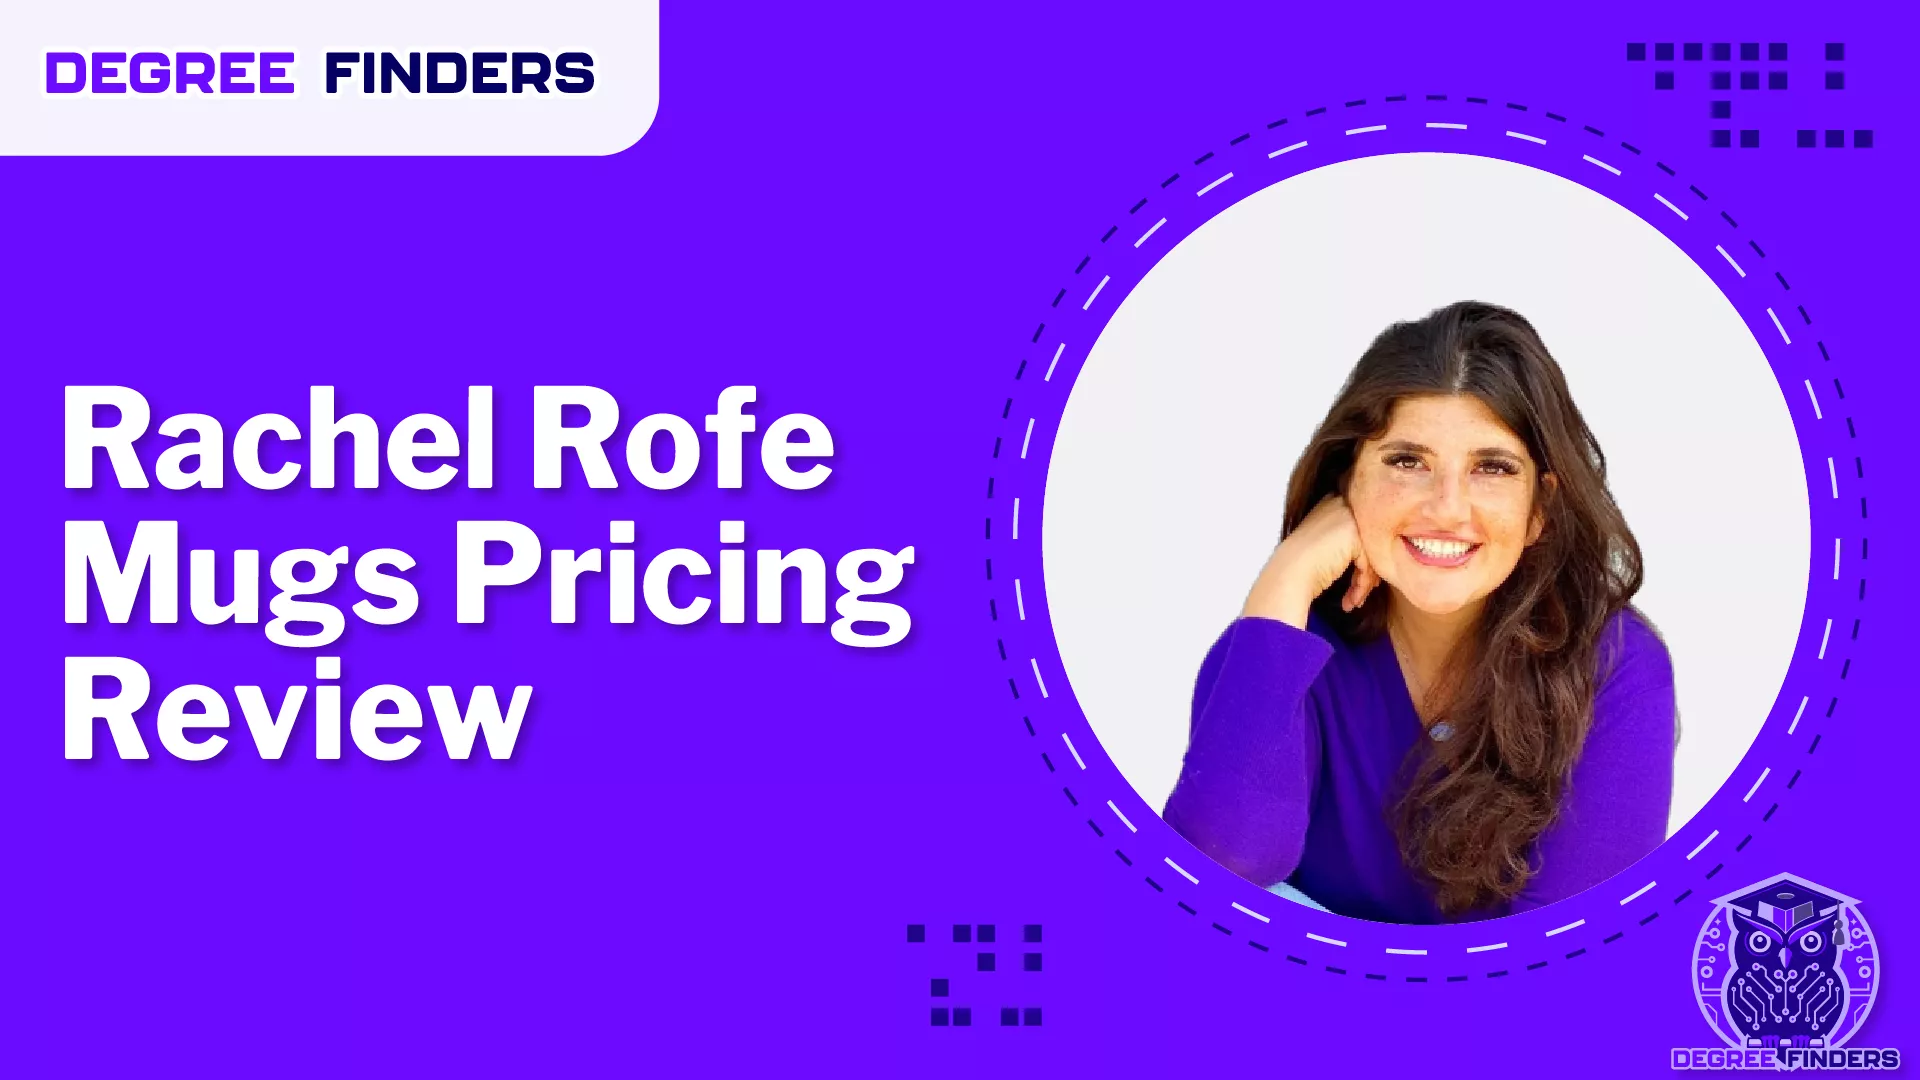 Rachel Rofe Mugs Pricing Review